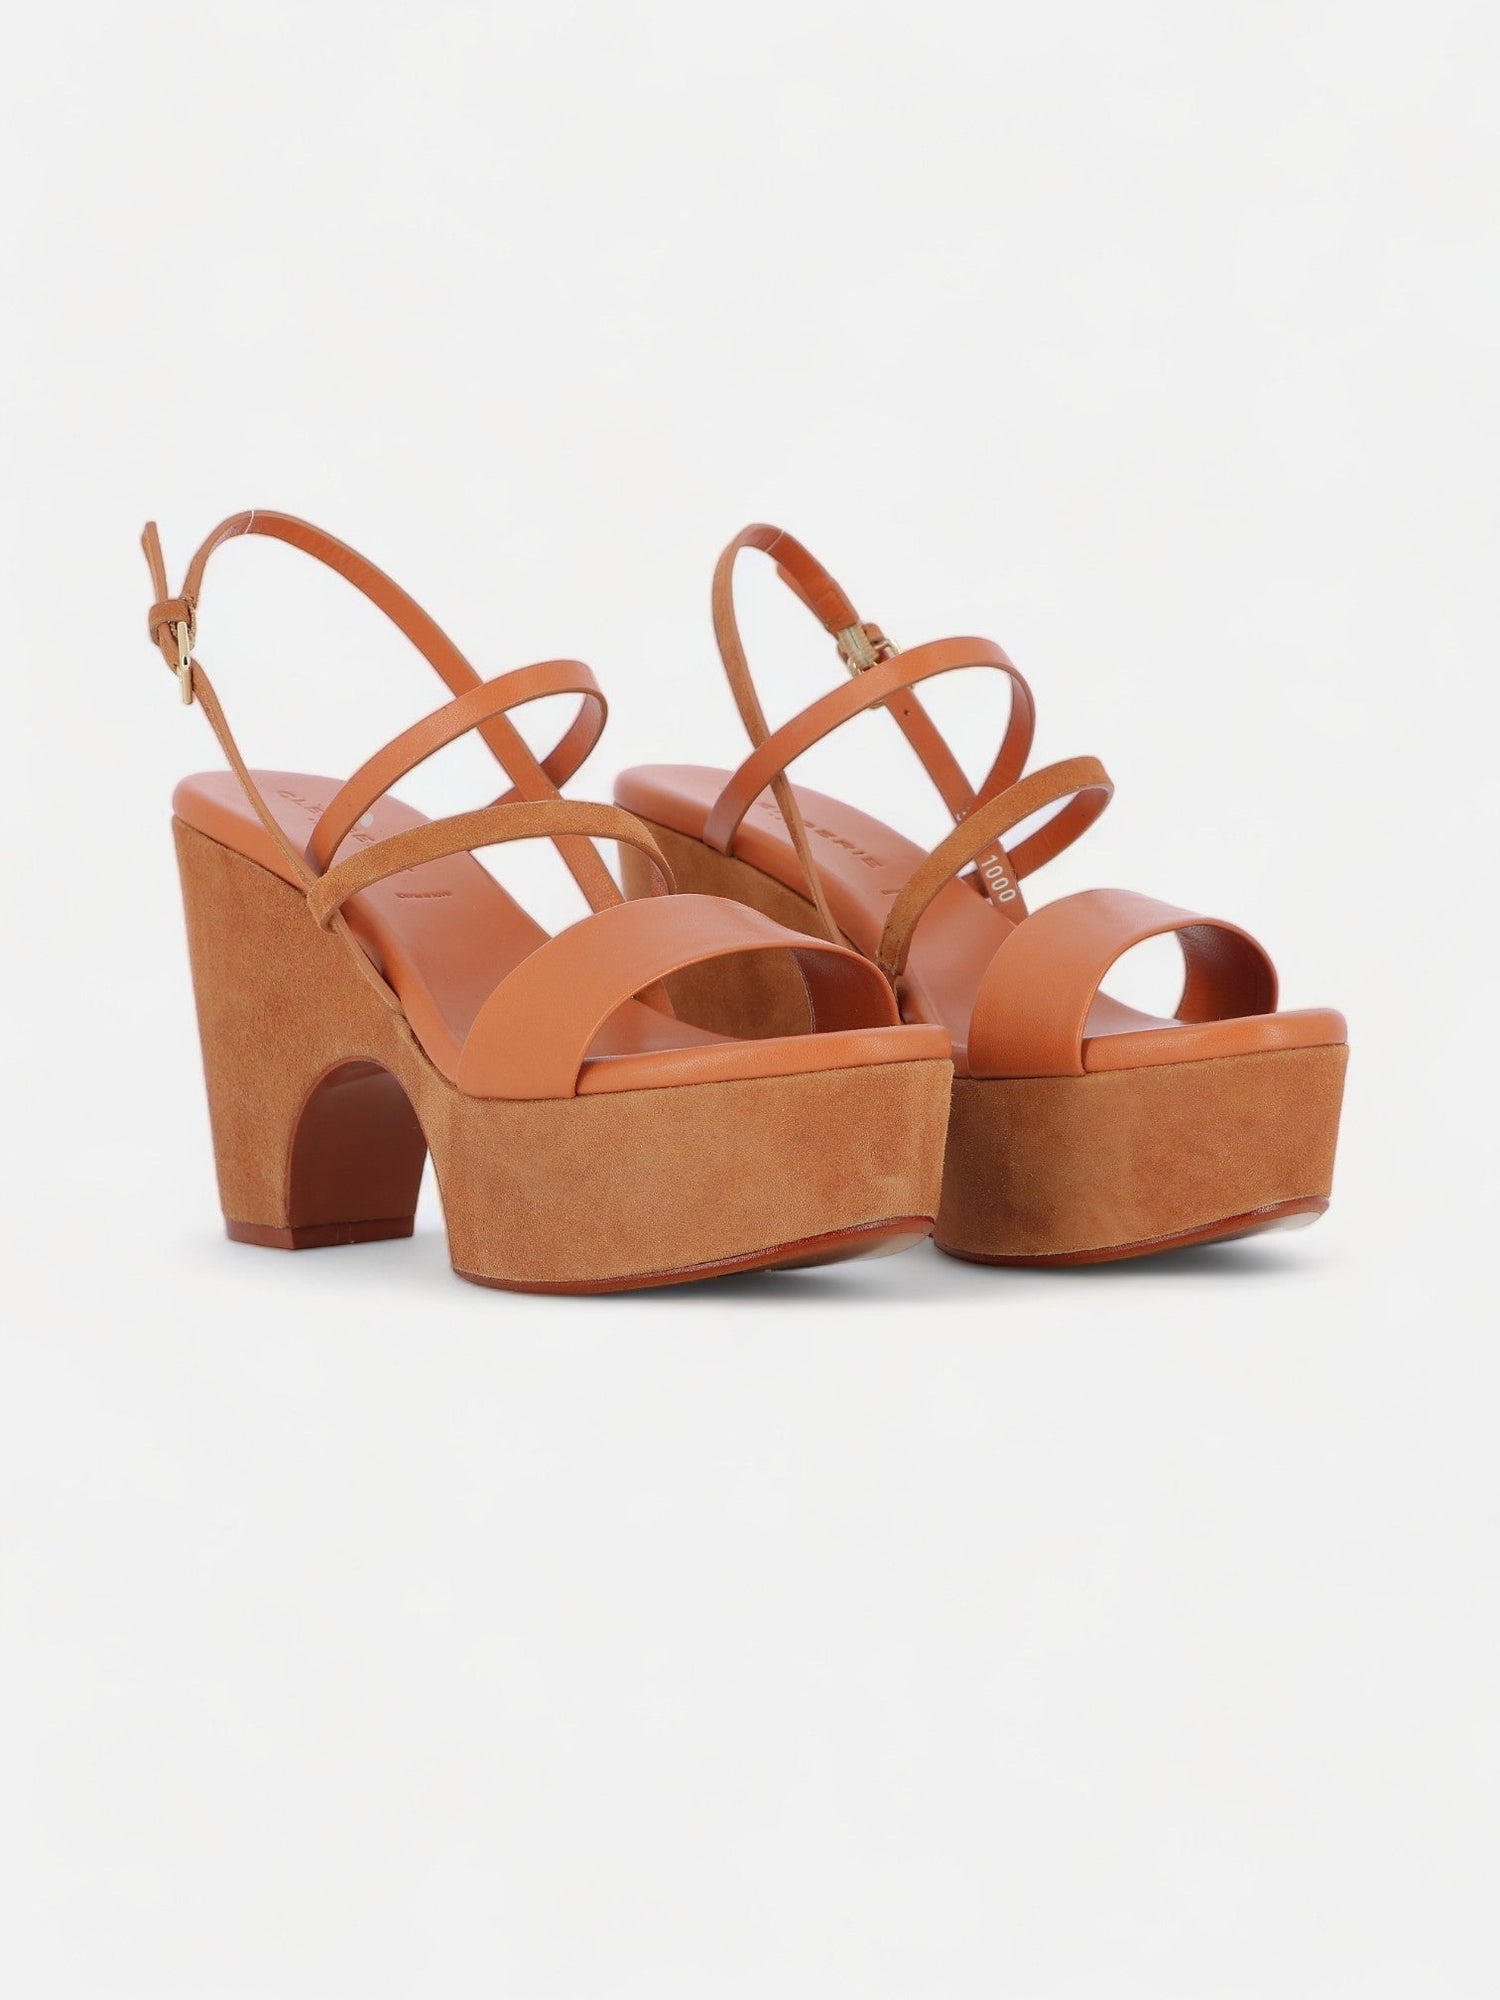 SANDALS - VOGUE sandals, lambskin brown - 3606063985475 - Clergerie Paris - Europe